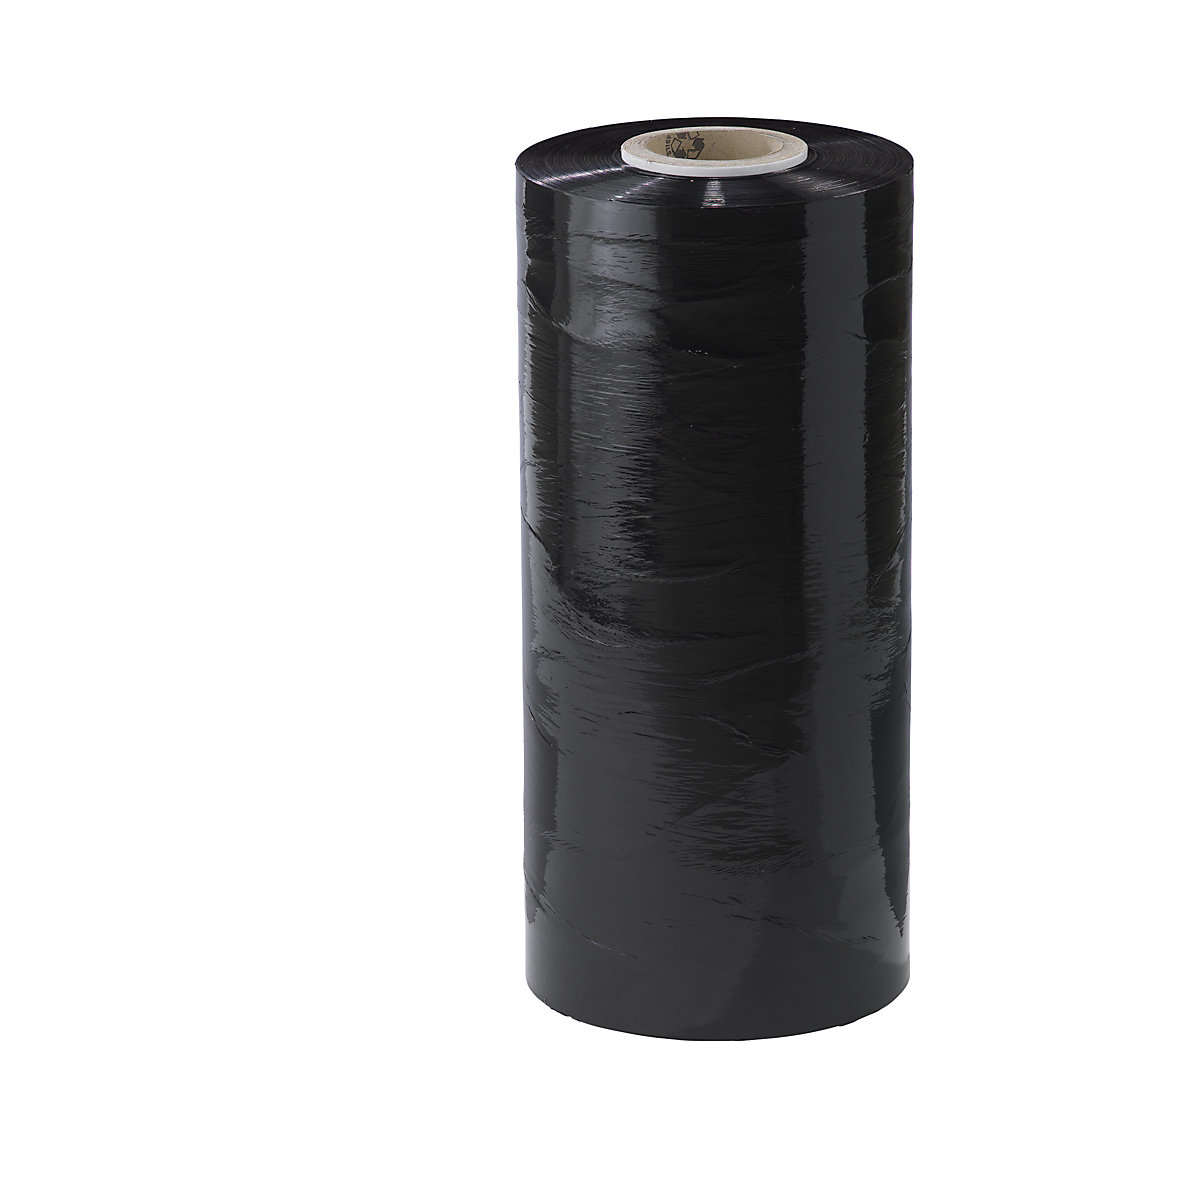 Película estirável para máquinas em PE, largura 500 mm, a partir de 2 embalagens, espessura da película 23 µm, embalagem de 45 unid., preto-1